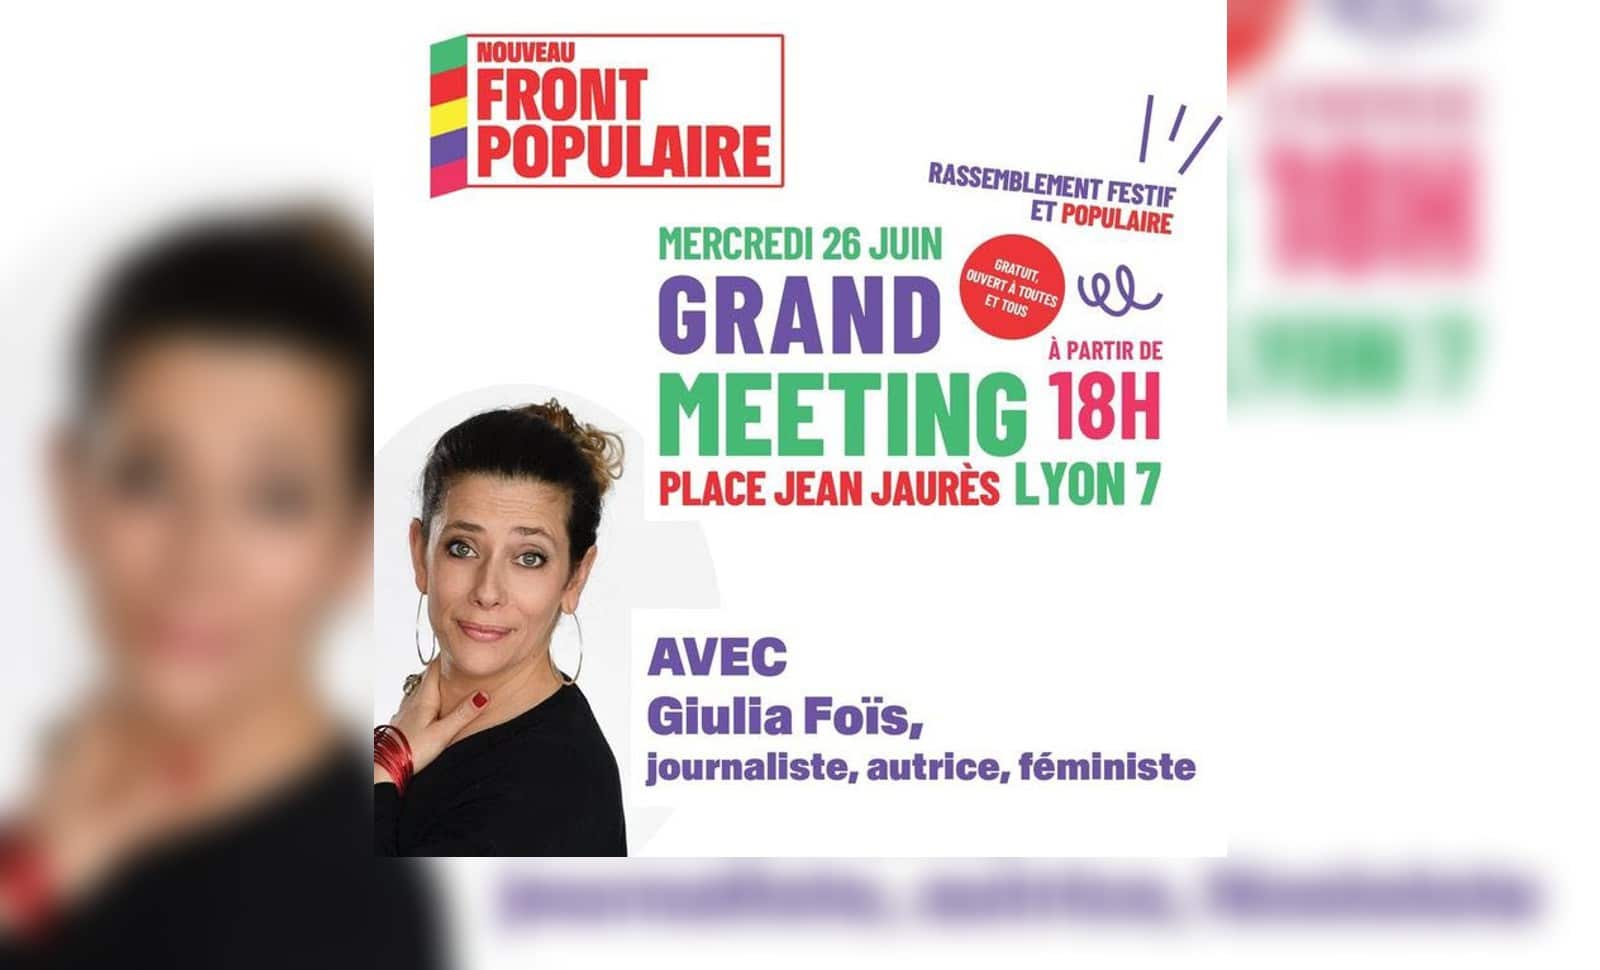 Giulia Foïs s’exhibe sur une affiche du Nouveau Front Populaire? La direction de France Inter ne voit apparemment pas où est le problème…